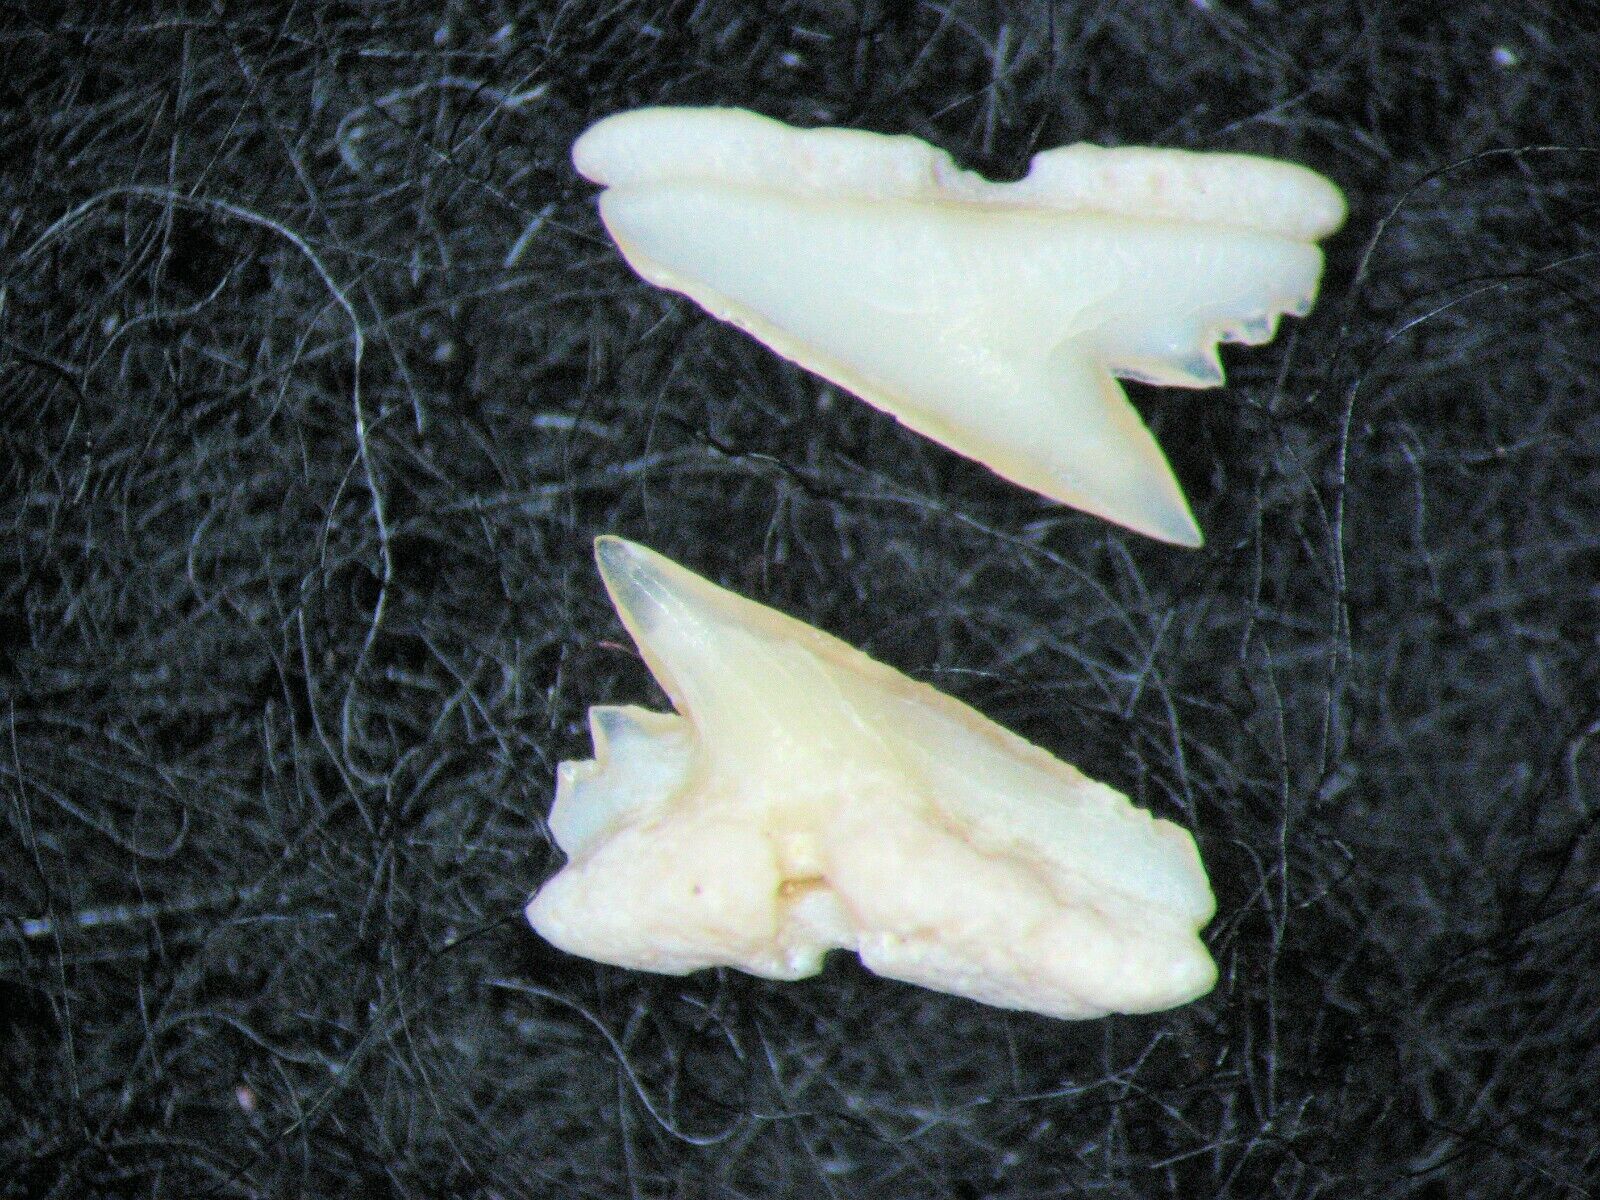 Vertebrate fossil slide mount - Palaeocene Morocco Galeorhinus meset shark tooth